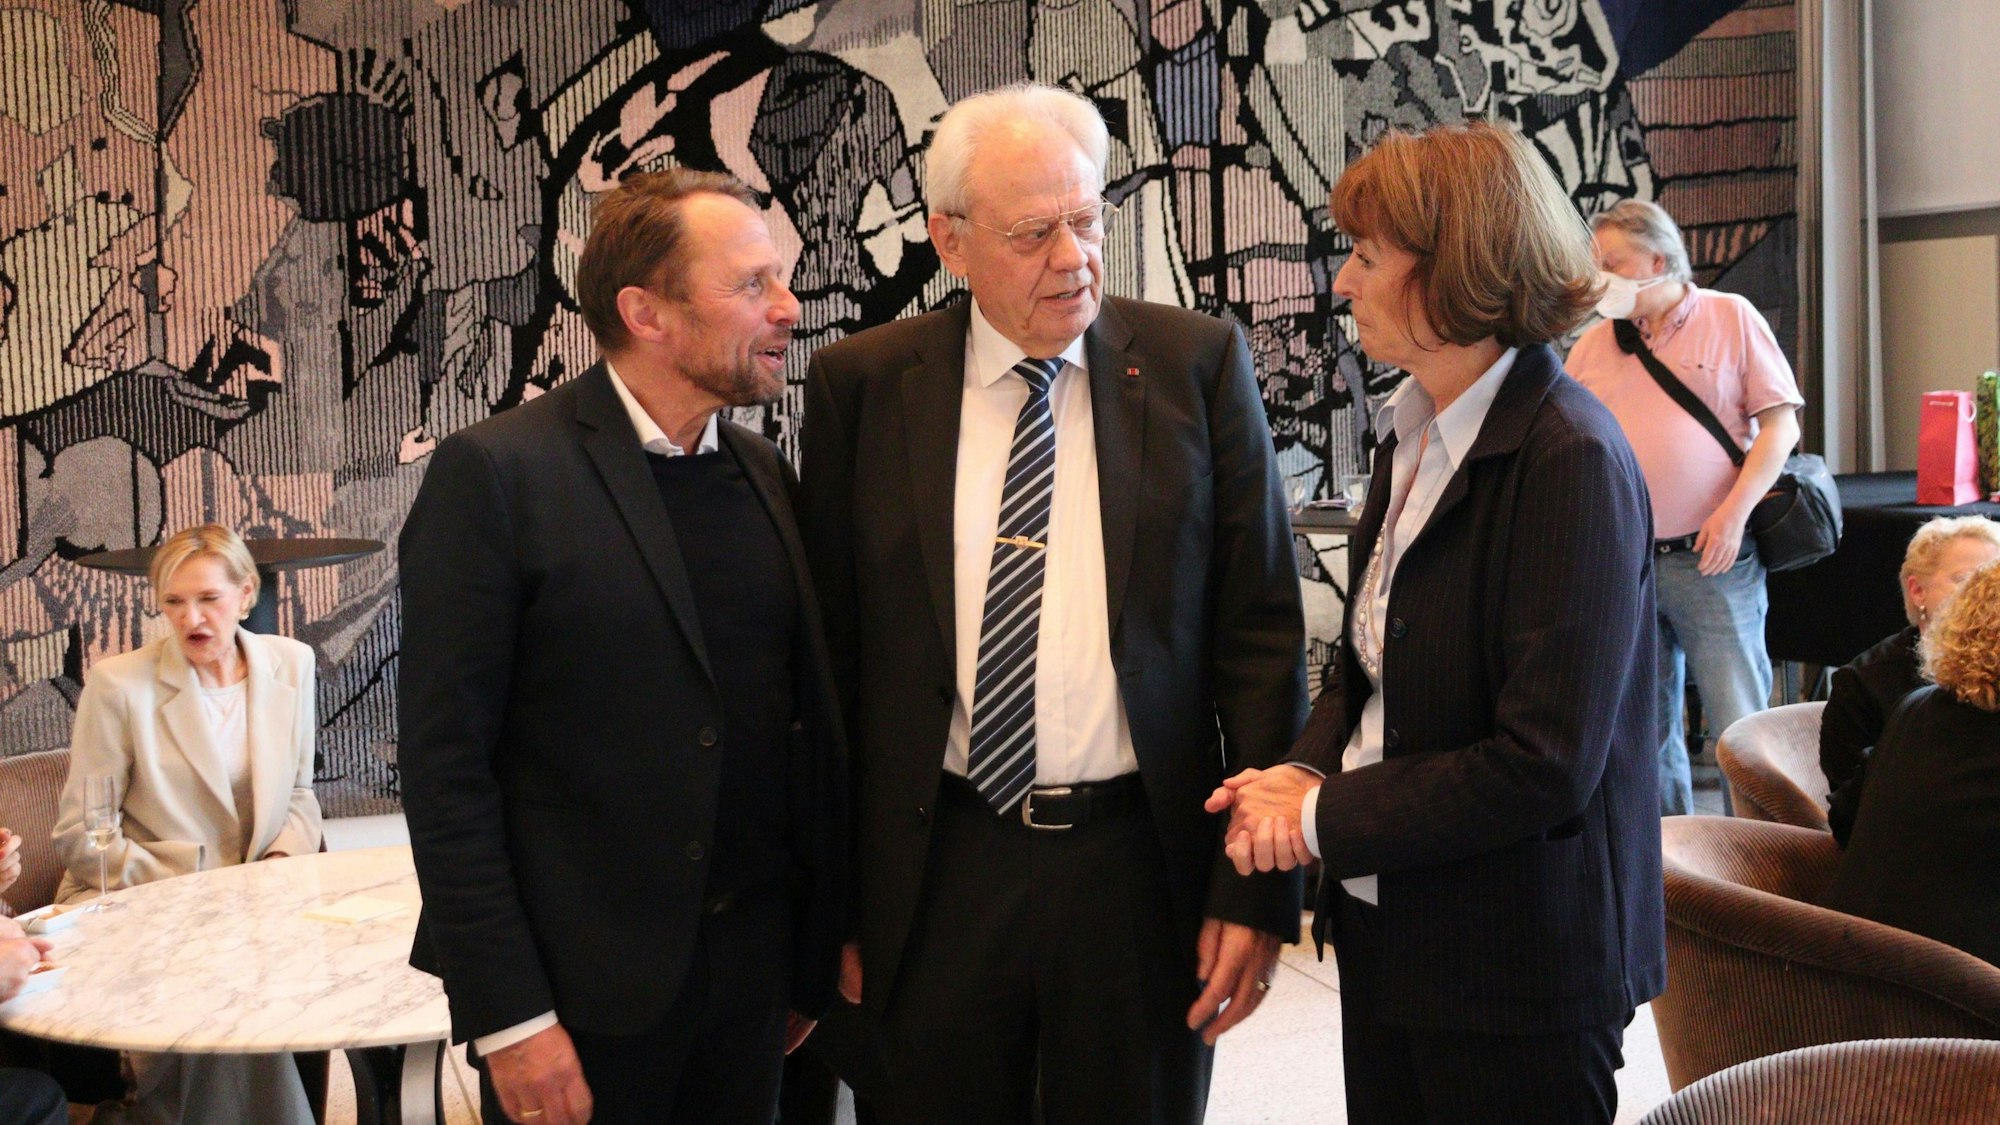 Leverkusens Oberbürgermeister Uwe Richrath war eigens gekommen, mit Norbert Fuchs und Henriette Reker (v.l.) zu feiern.